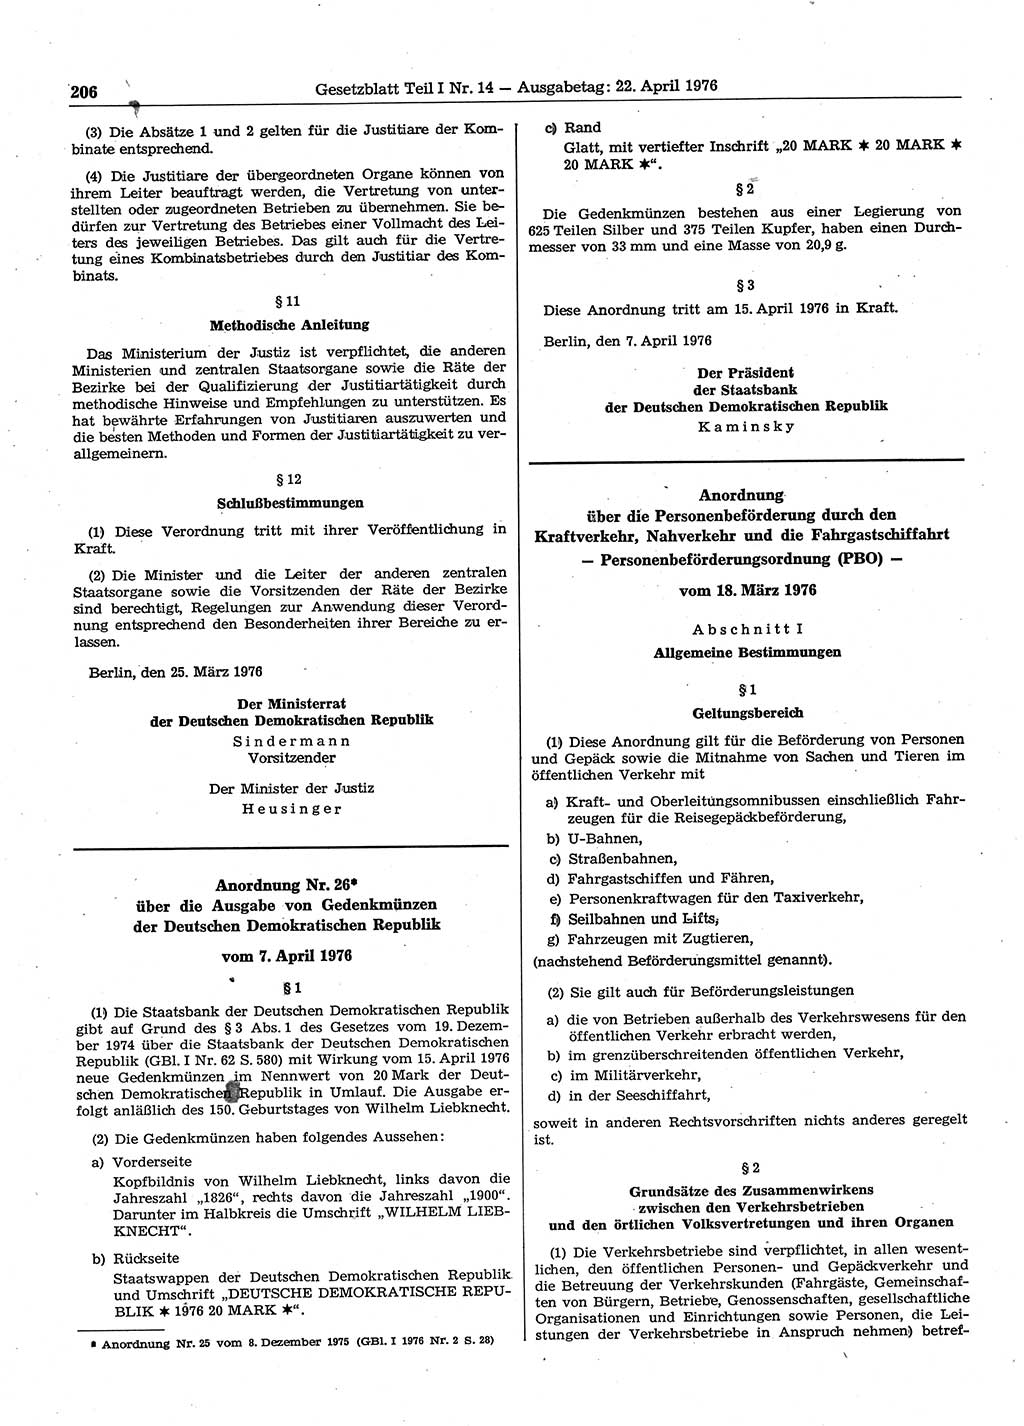 Gesetzblatt (GBl.) der Deutschen Demokratischen Republik (DDR) Teil Ⅰ 1976, Seite 206 (GBl. DDR Ⅰ 1976, S. 206)